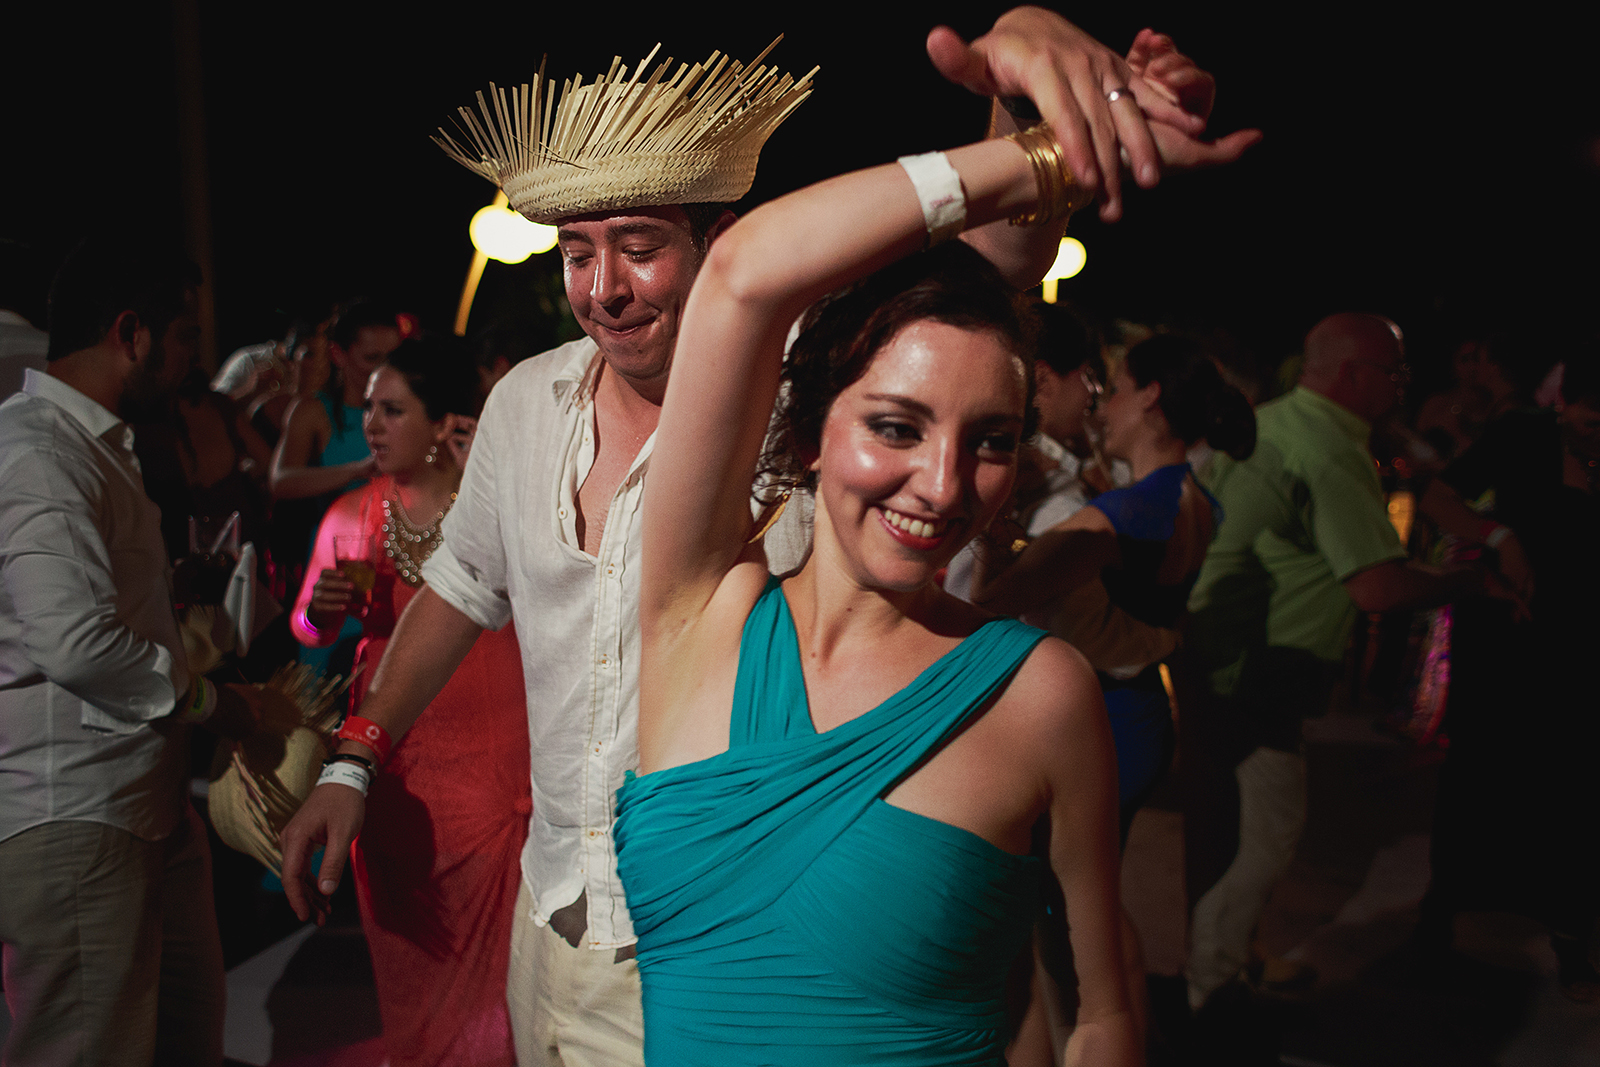 Invitados bailando con una vueltecita, hombre viste un sombrero típico de la cultura mexicana